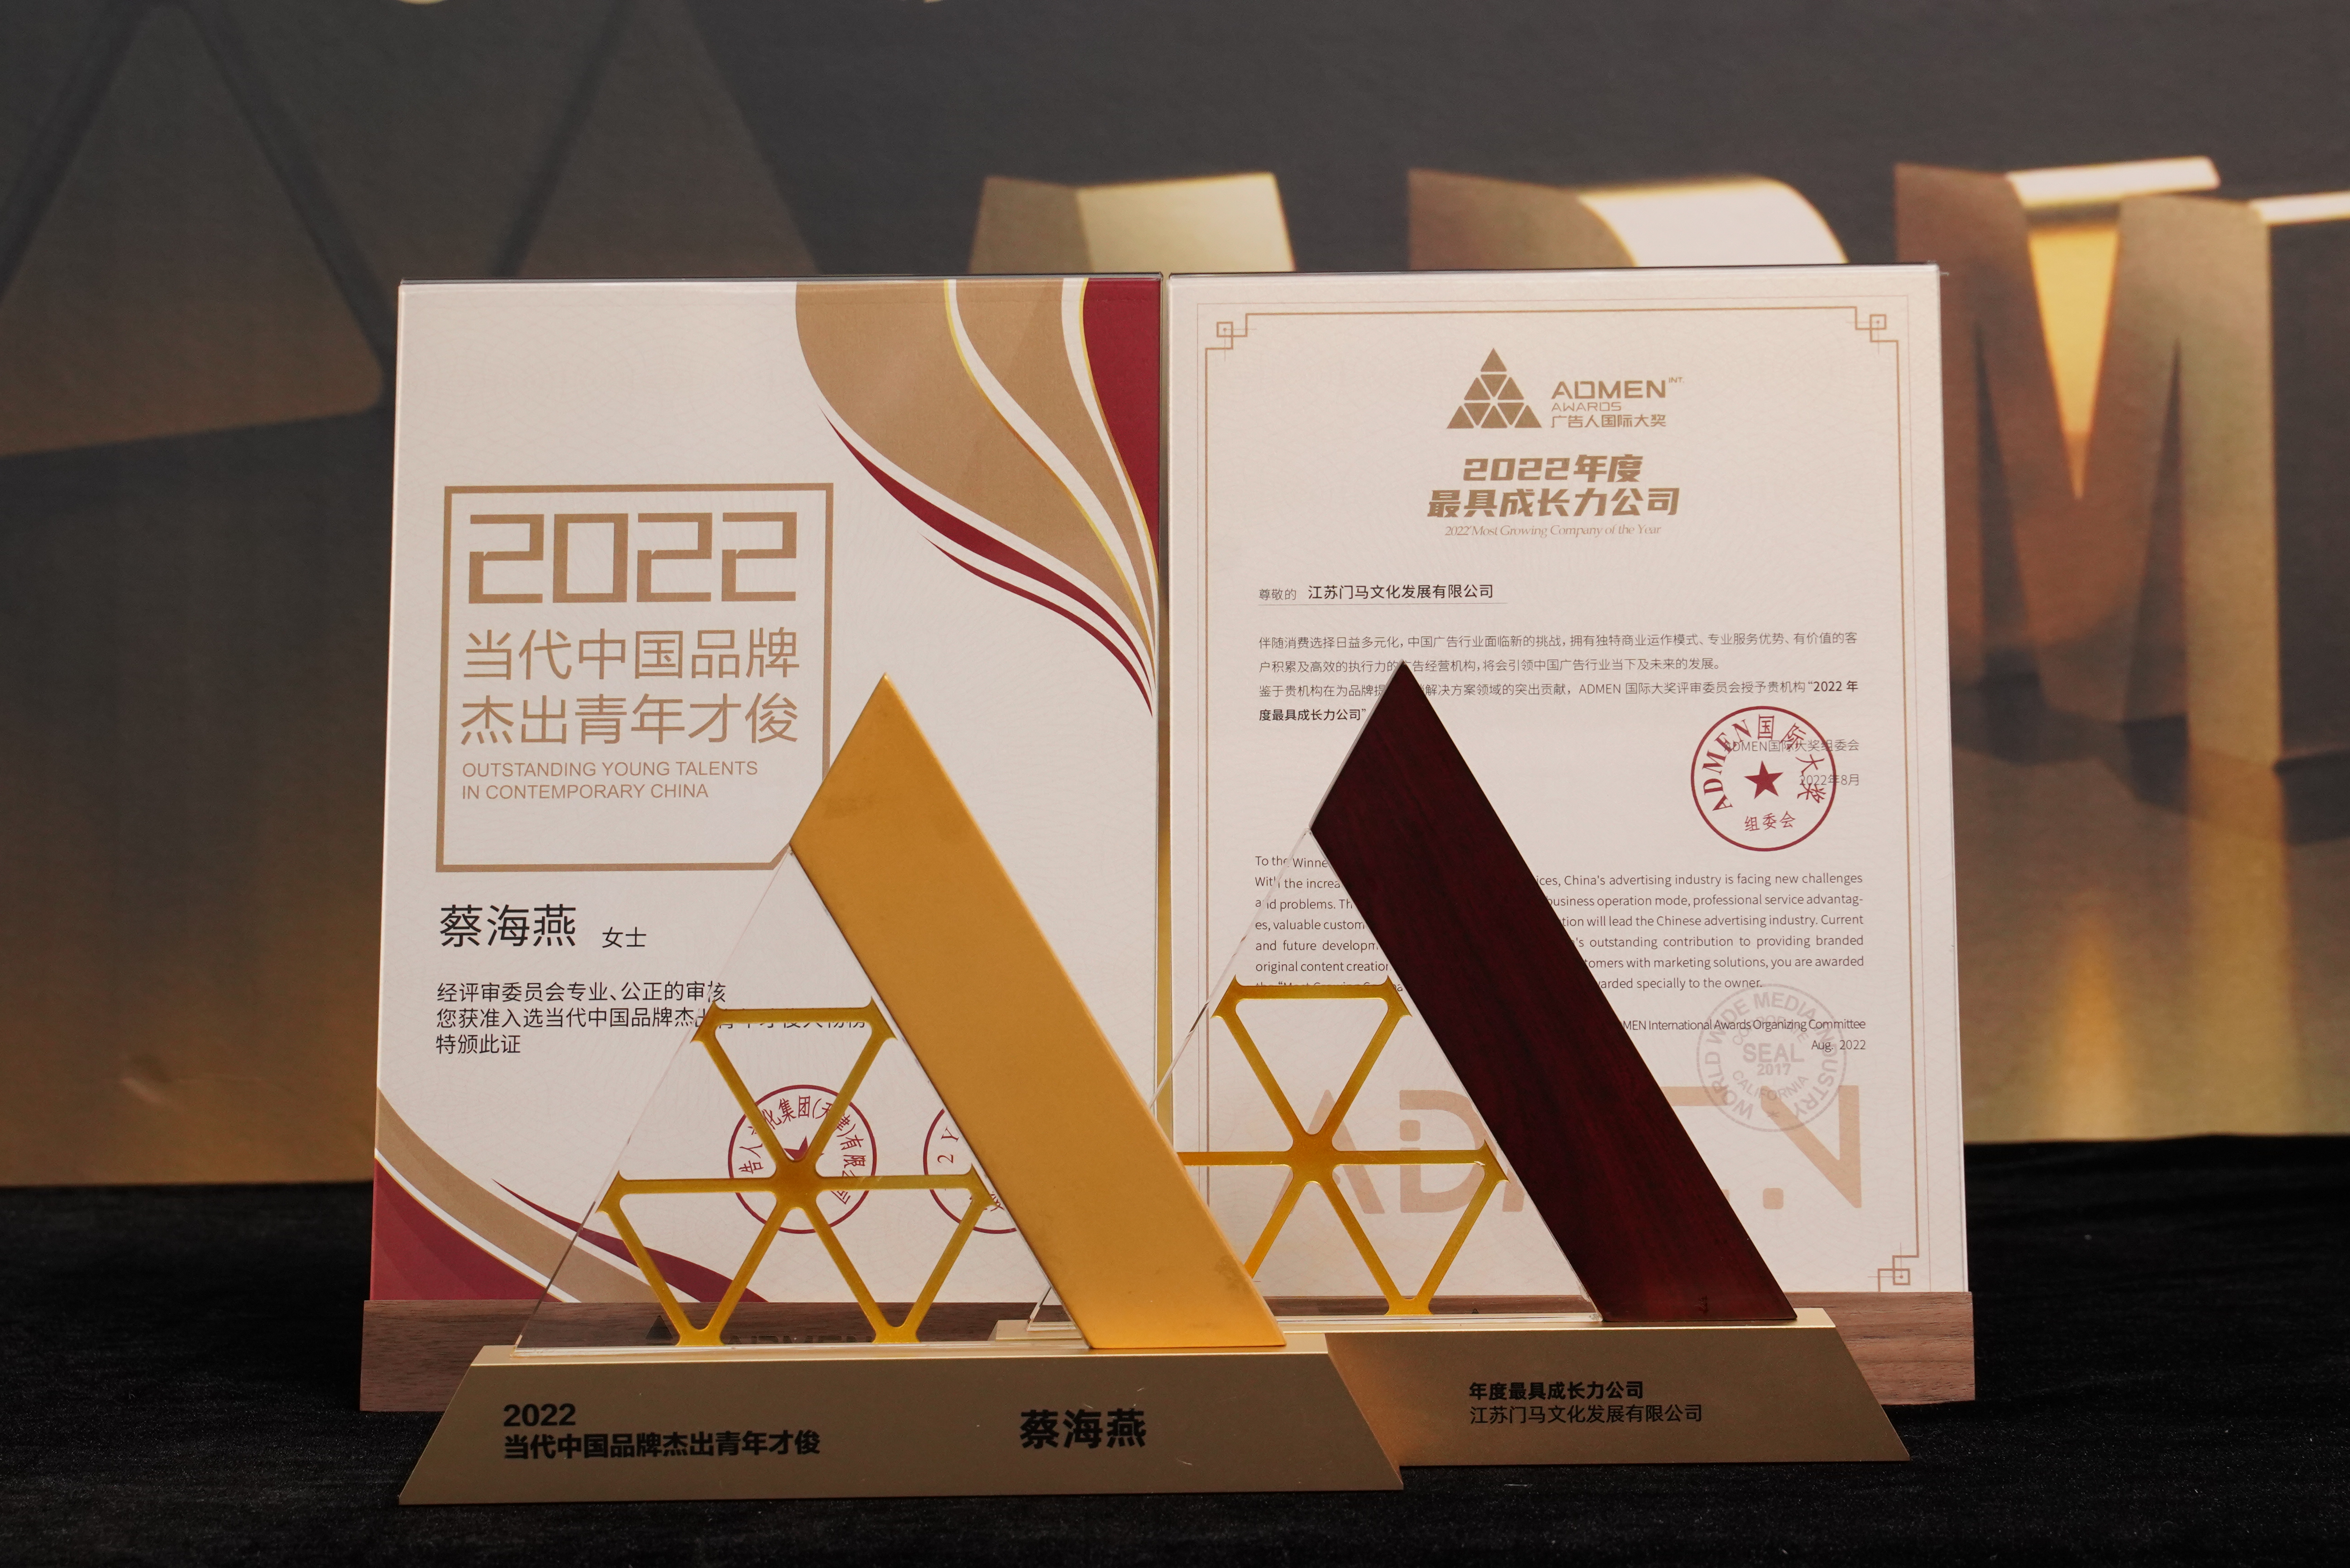 江蘇門馬文化發展有限公司斬獲2項2022ADMEN國際大獎